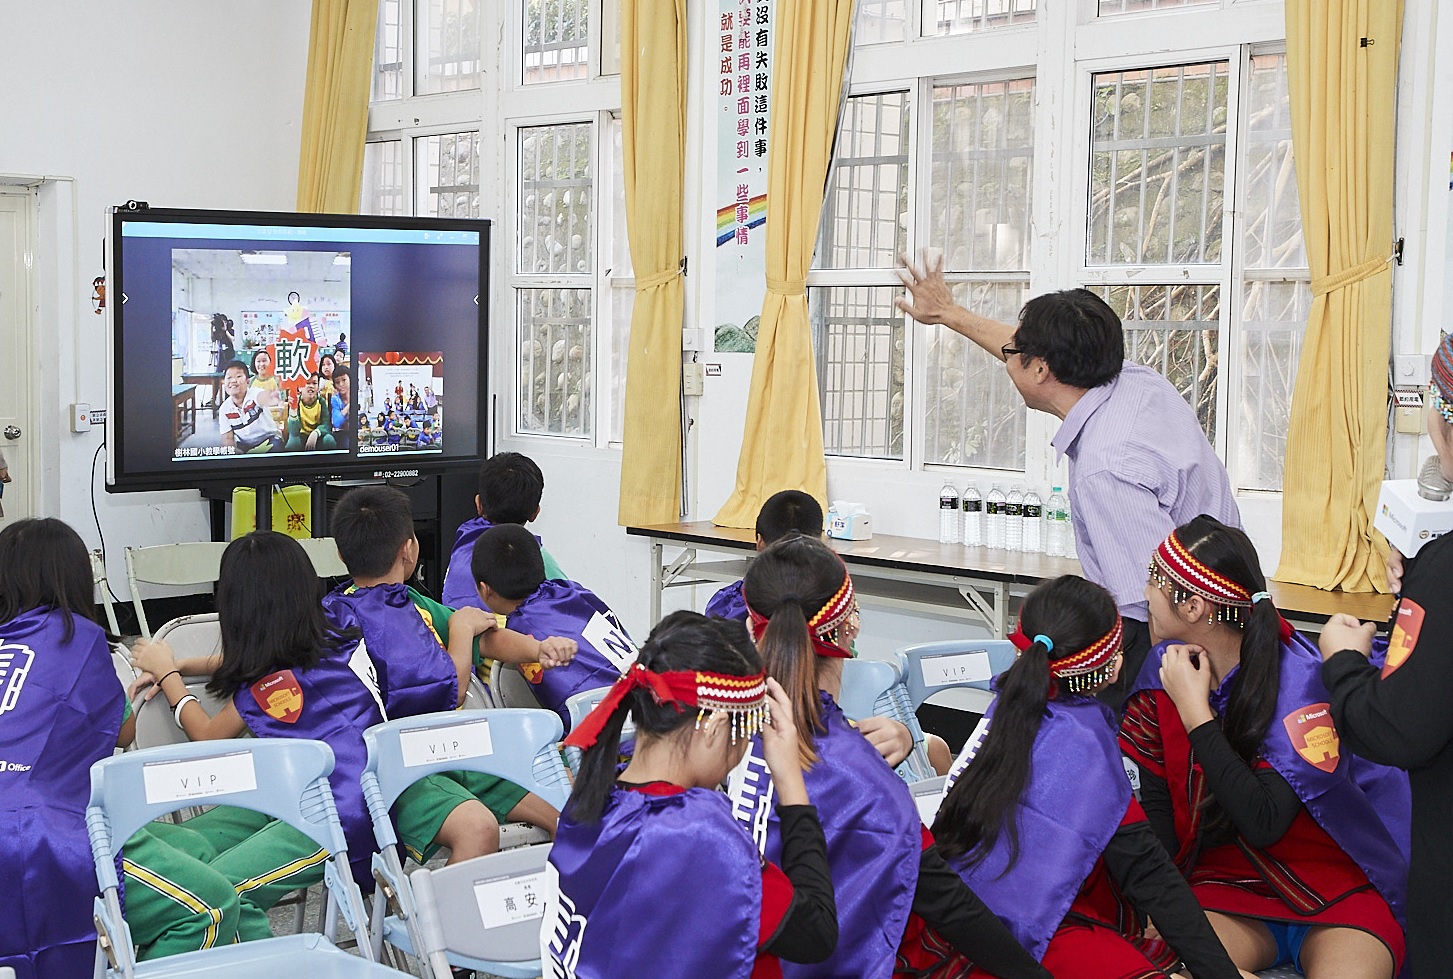 【新聞照片八】樹林國小與長興國小透過Skype視訊，學生相互教學泰雅族語及越南語，體現科技應用將使語言交流更加無遠弗屆！